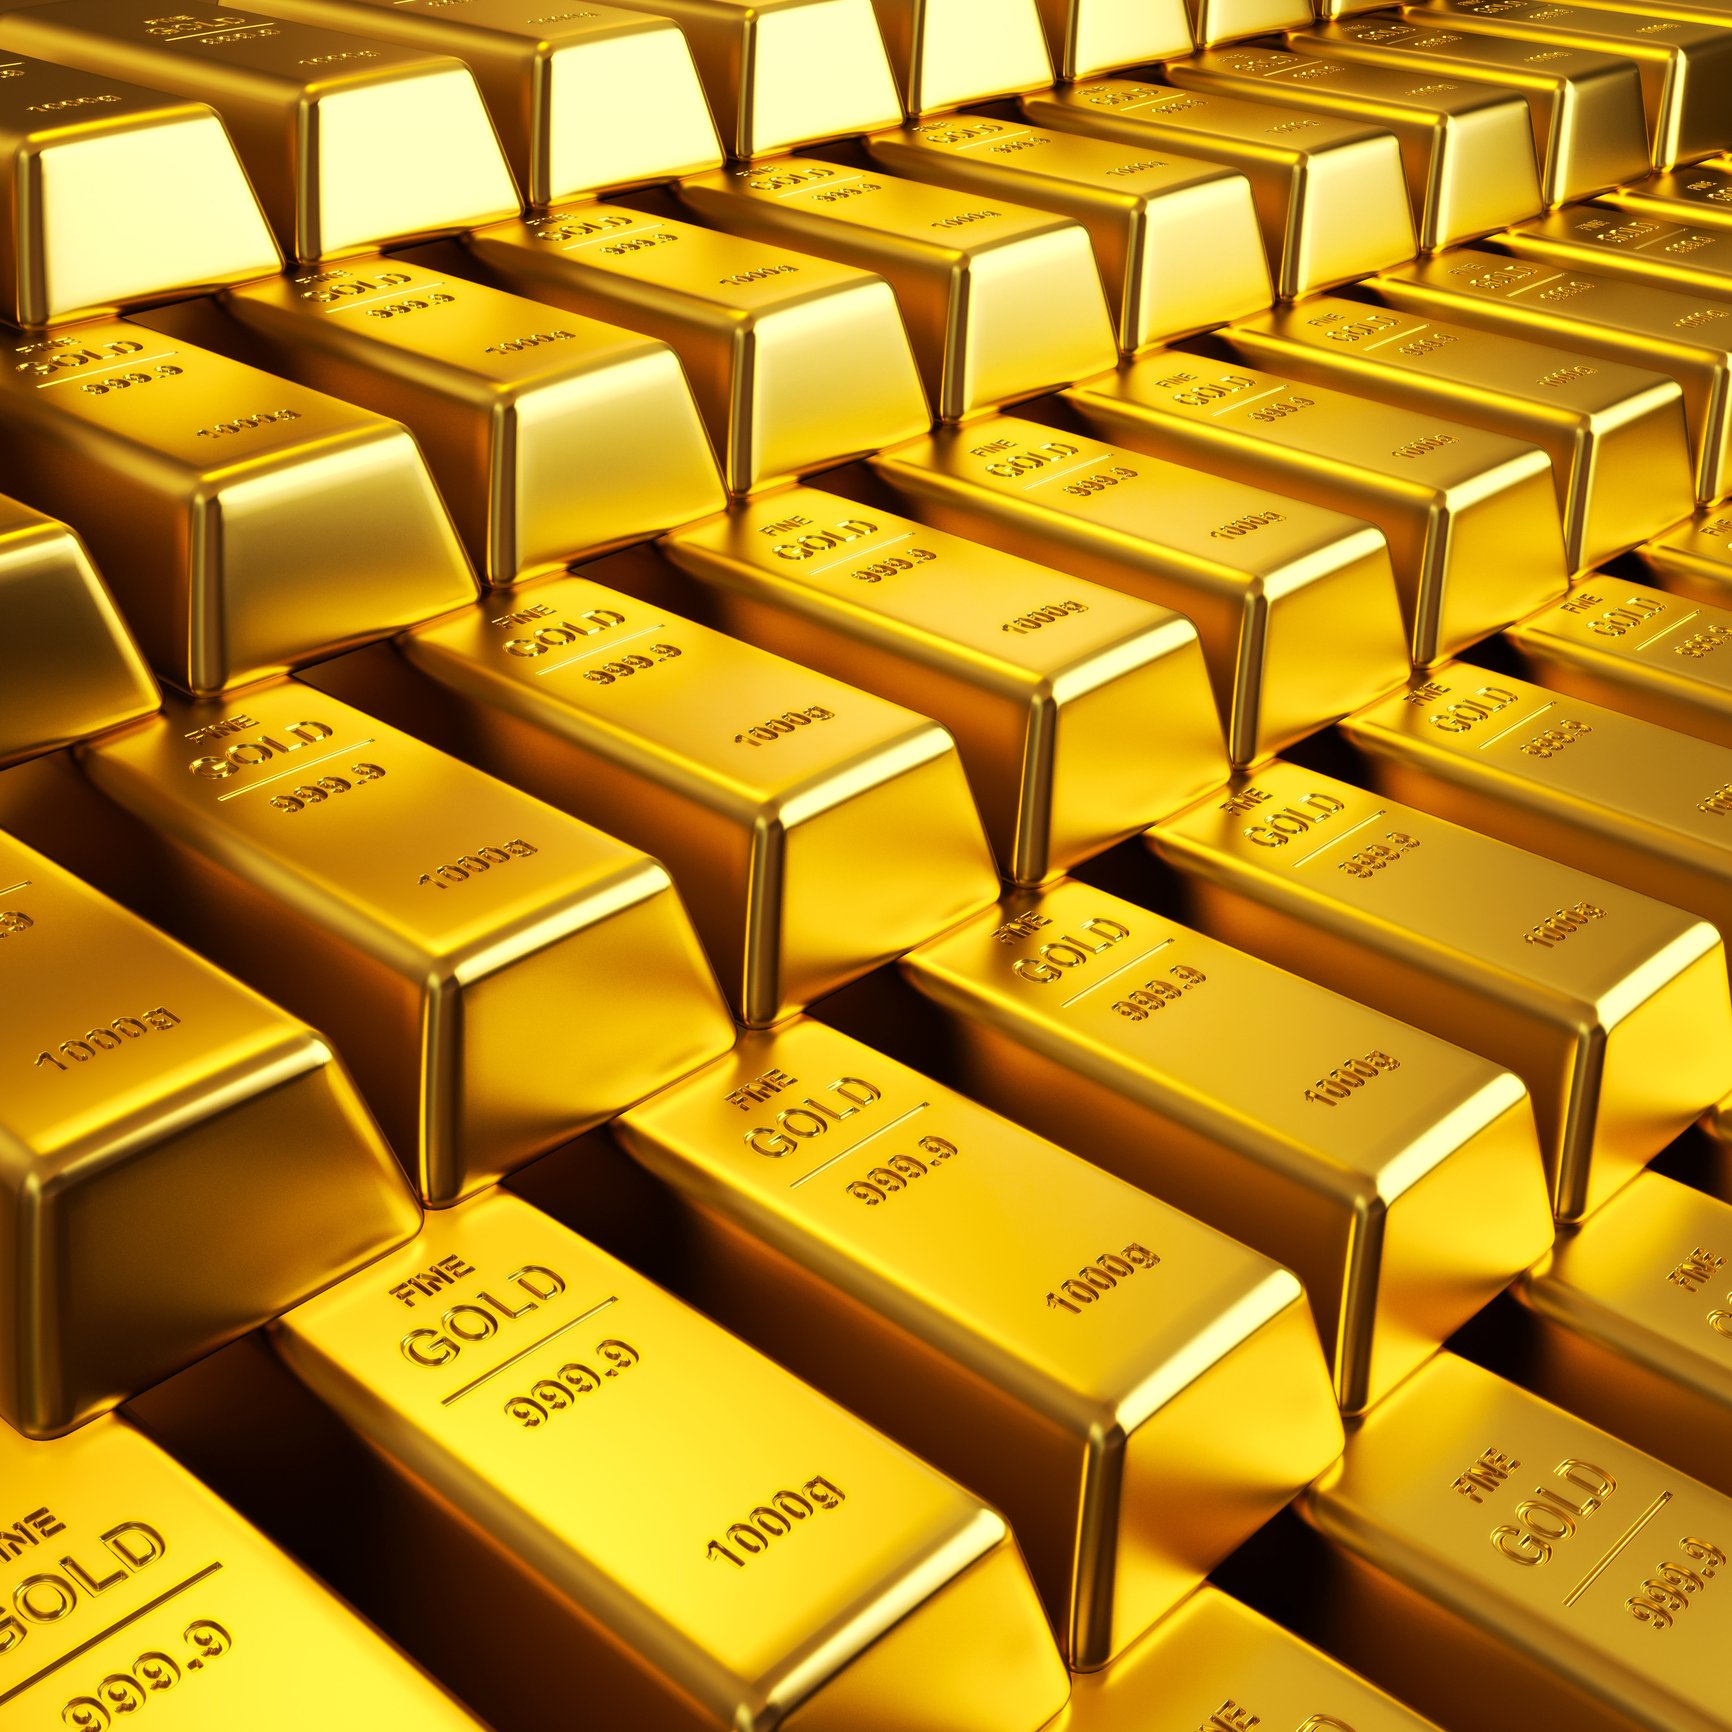 أسعار الذهب اليوم في مصر الأثنين 23-8-2021 1